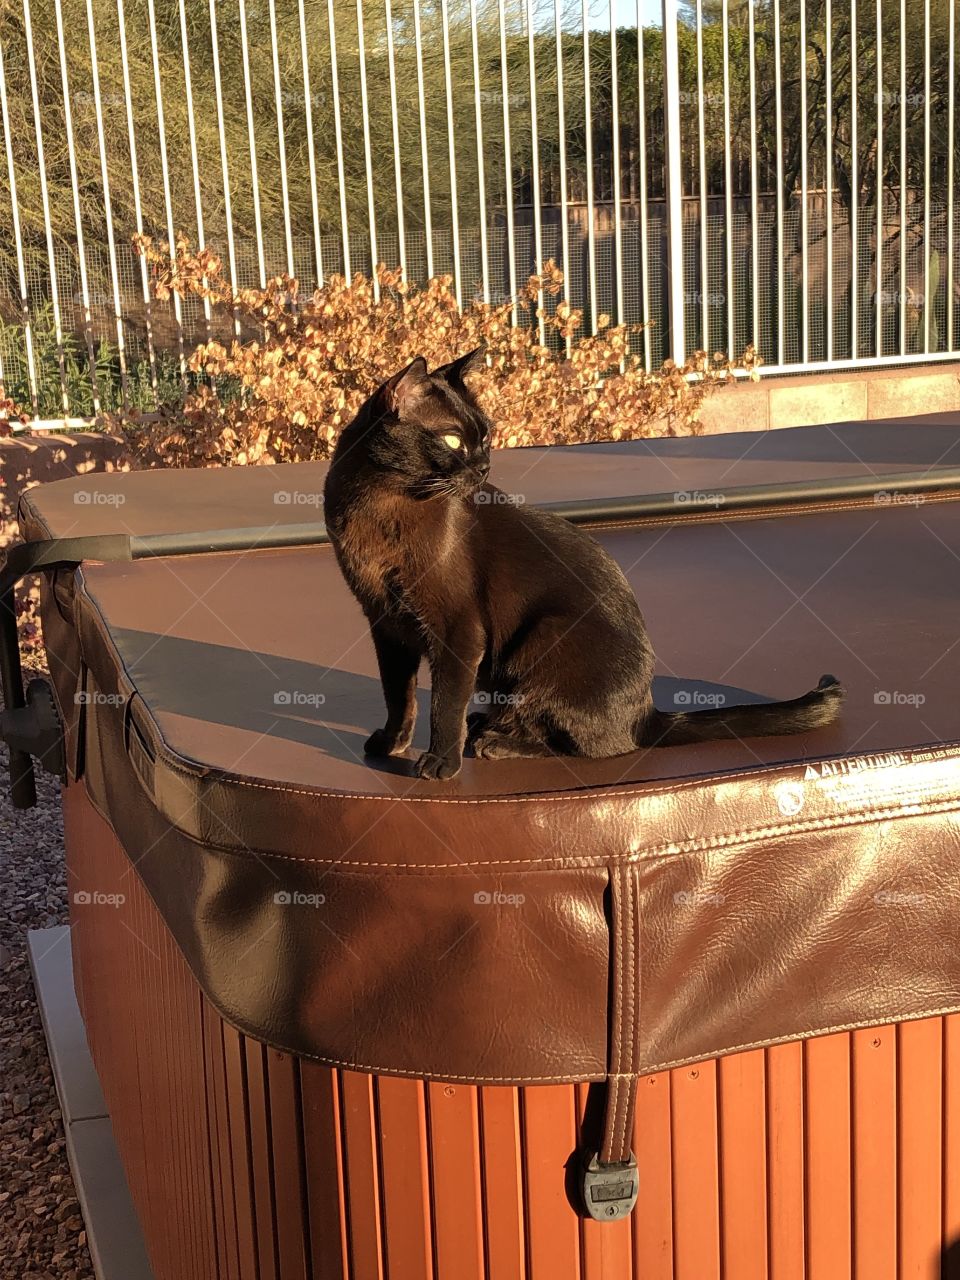 Hot tub cat